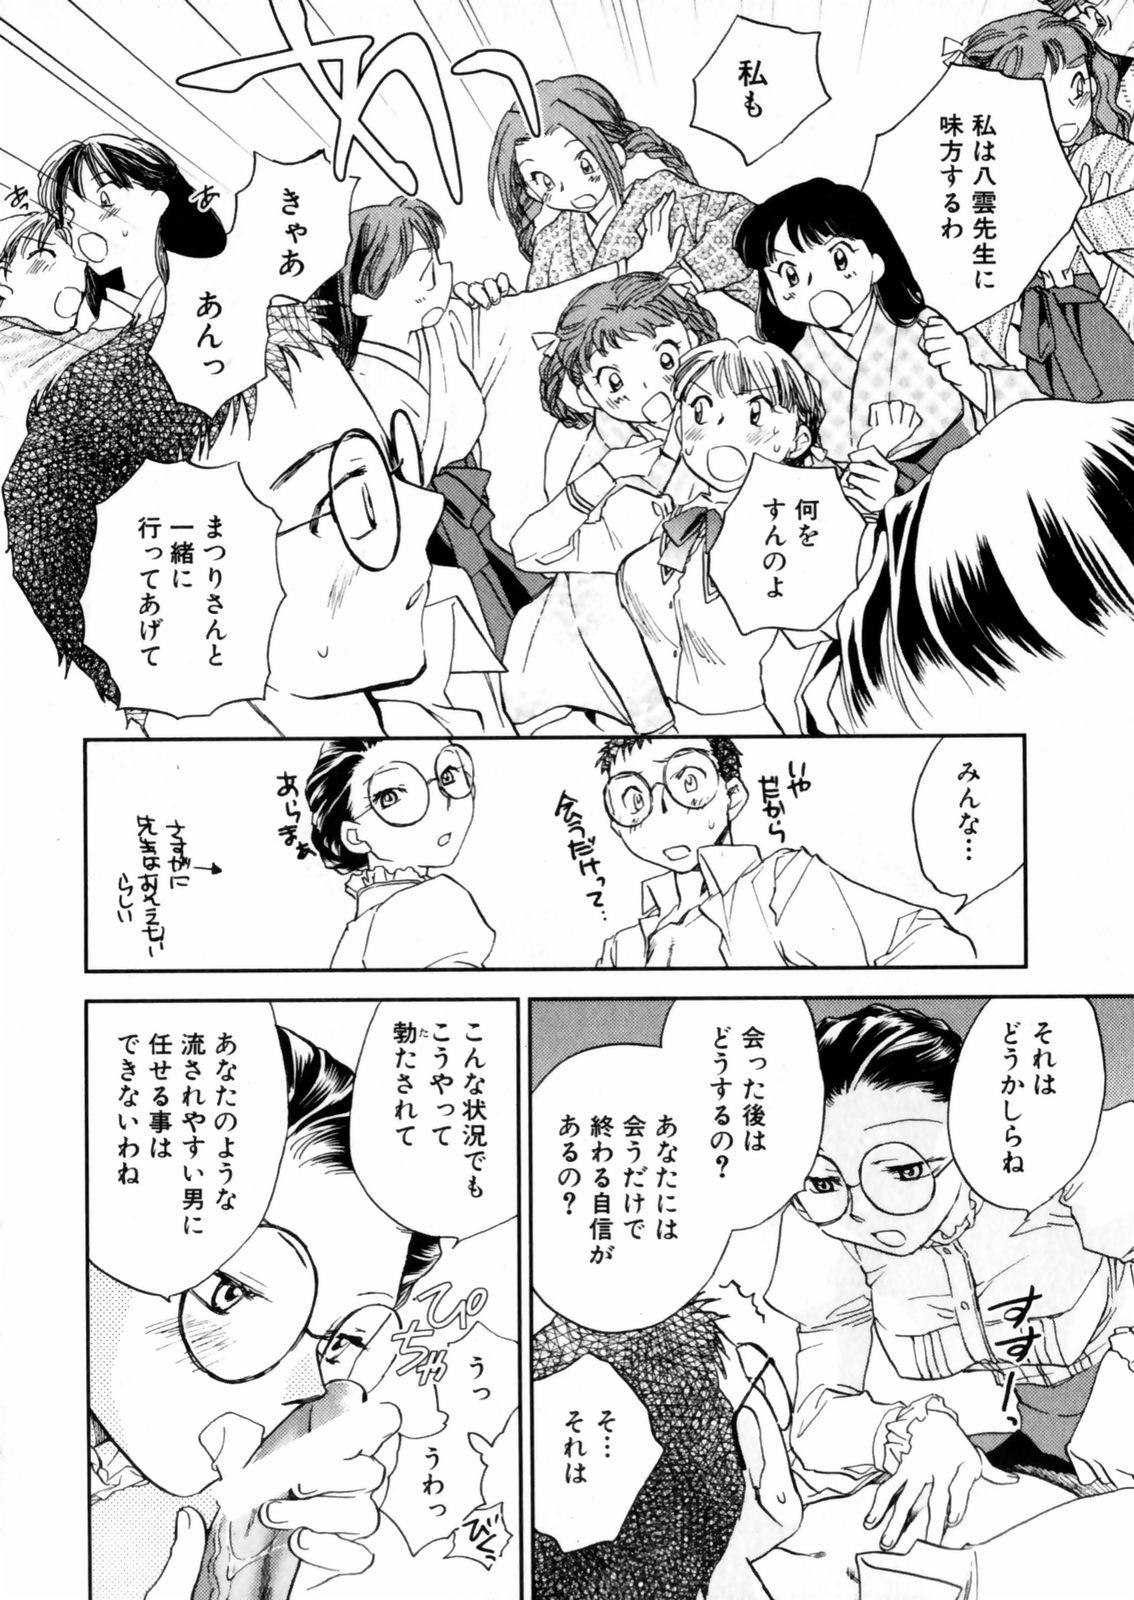 [Okano Ahiru] Hanasake ! Otome Juku (Otome Private Tutoring School) Vol.2 75